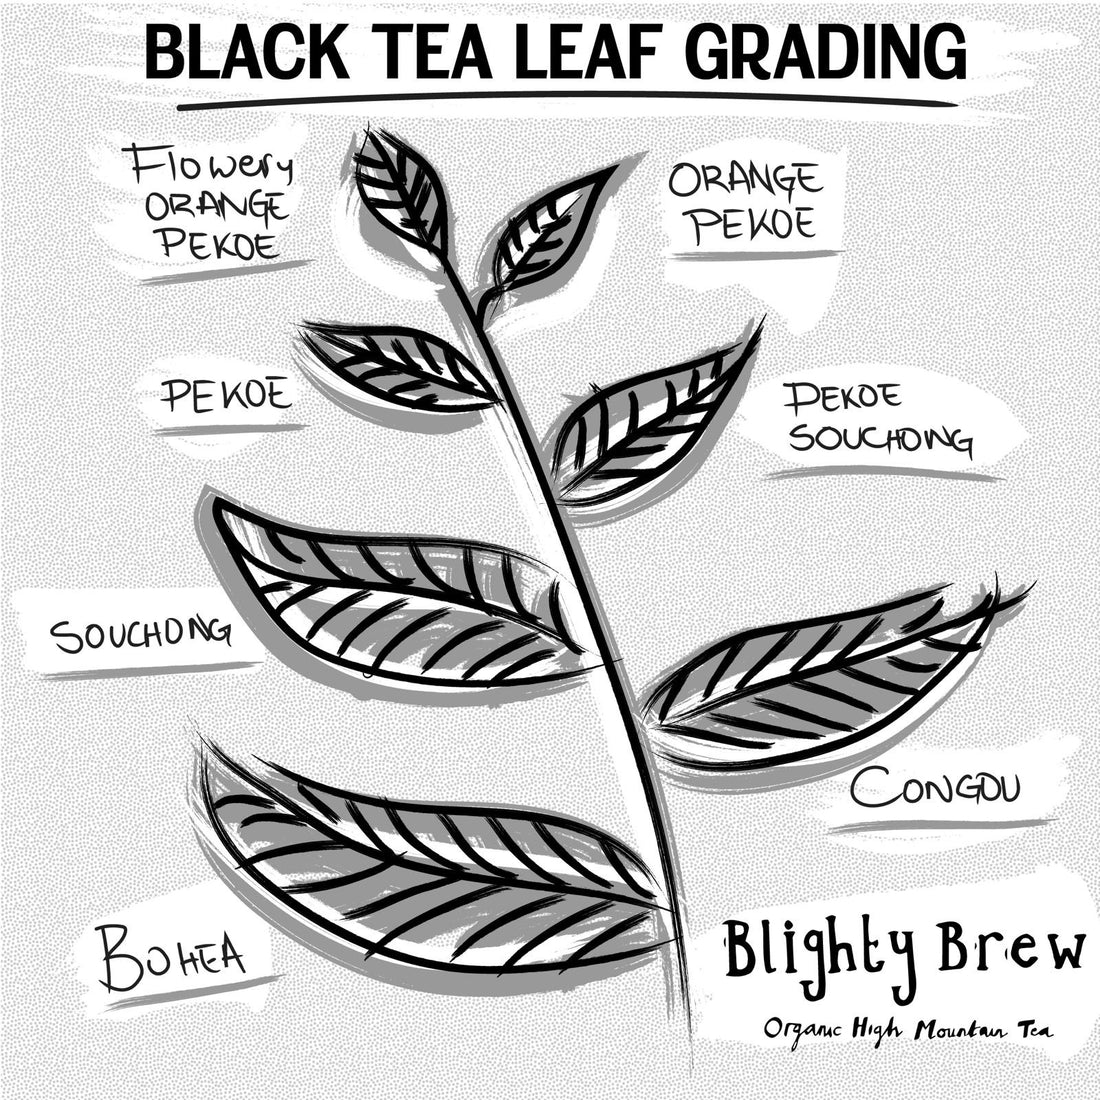 Black Tea Leaf Grading